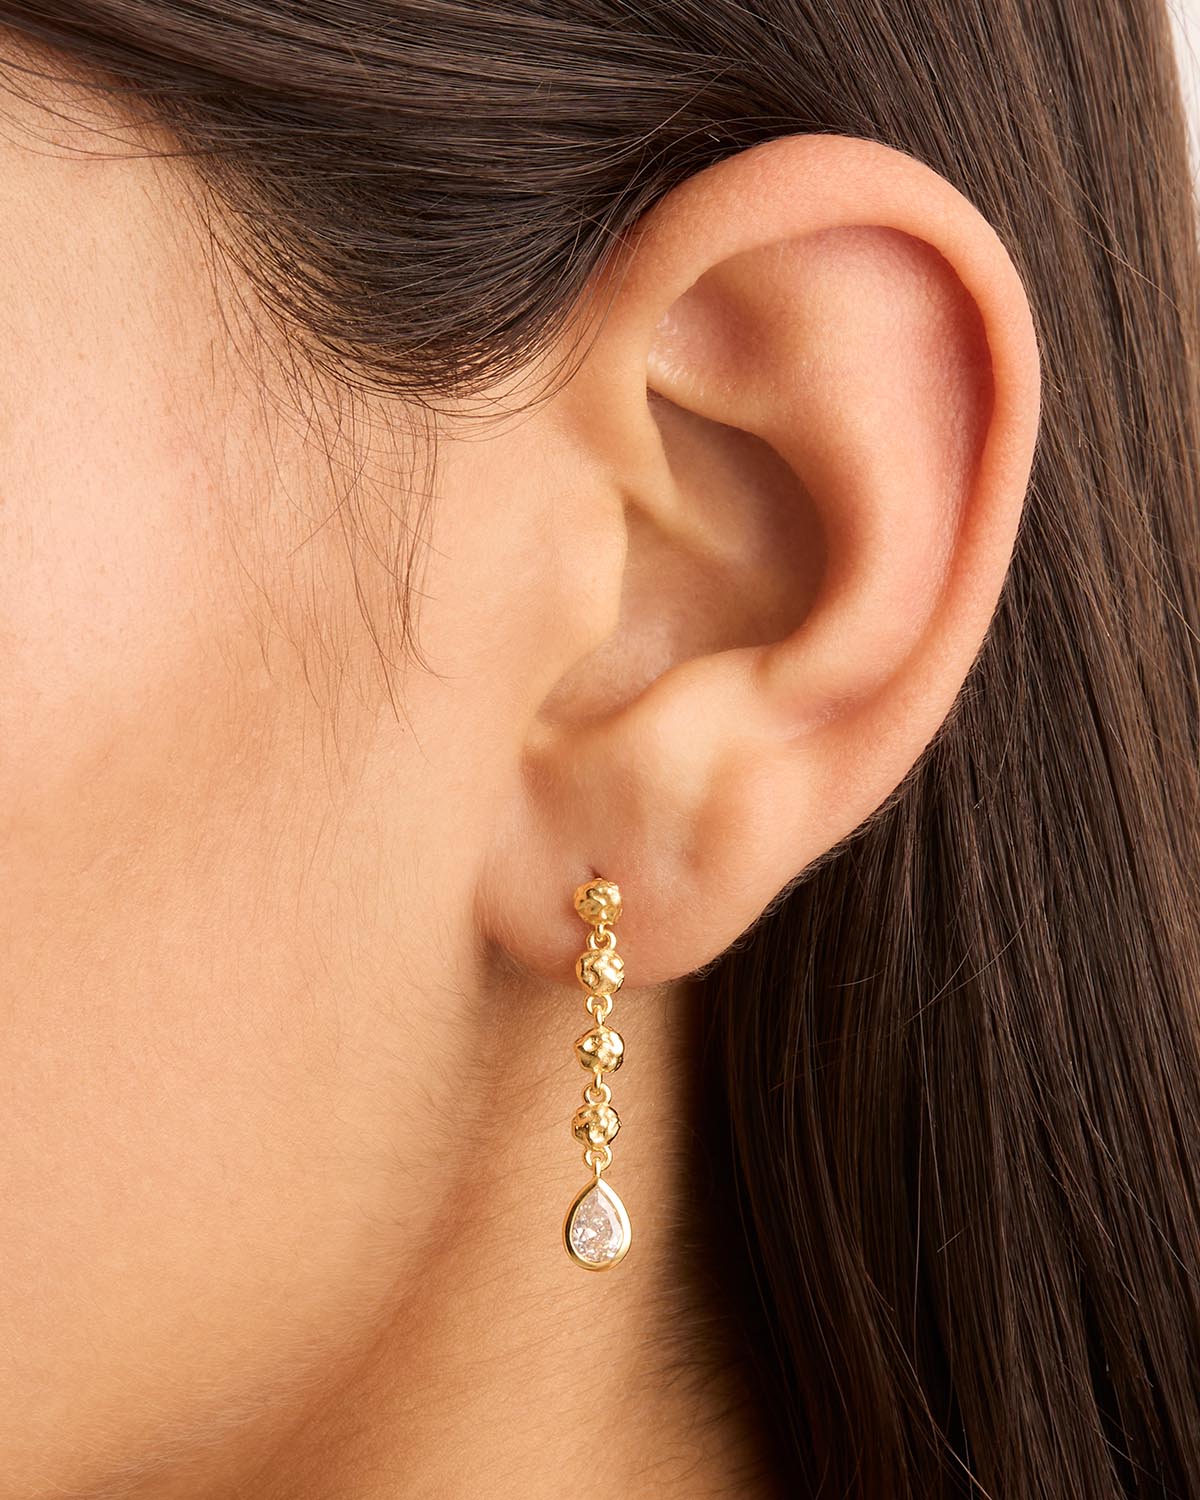 Amazing 22k Yellow gold Dangle Earrings